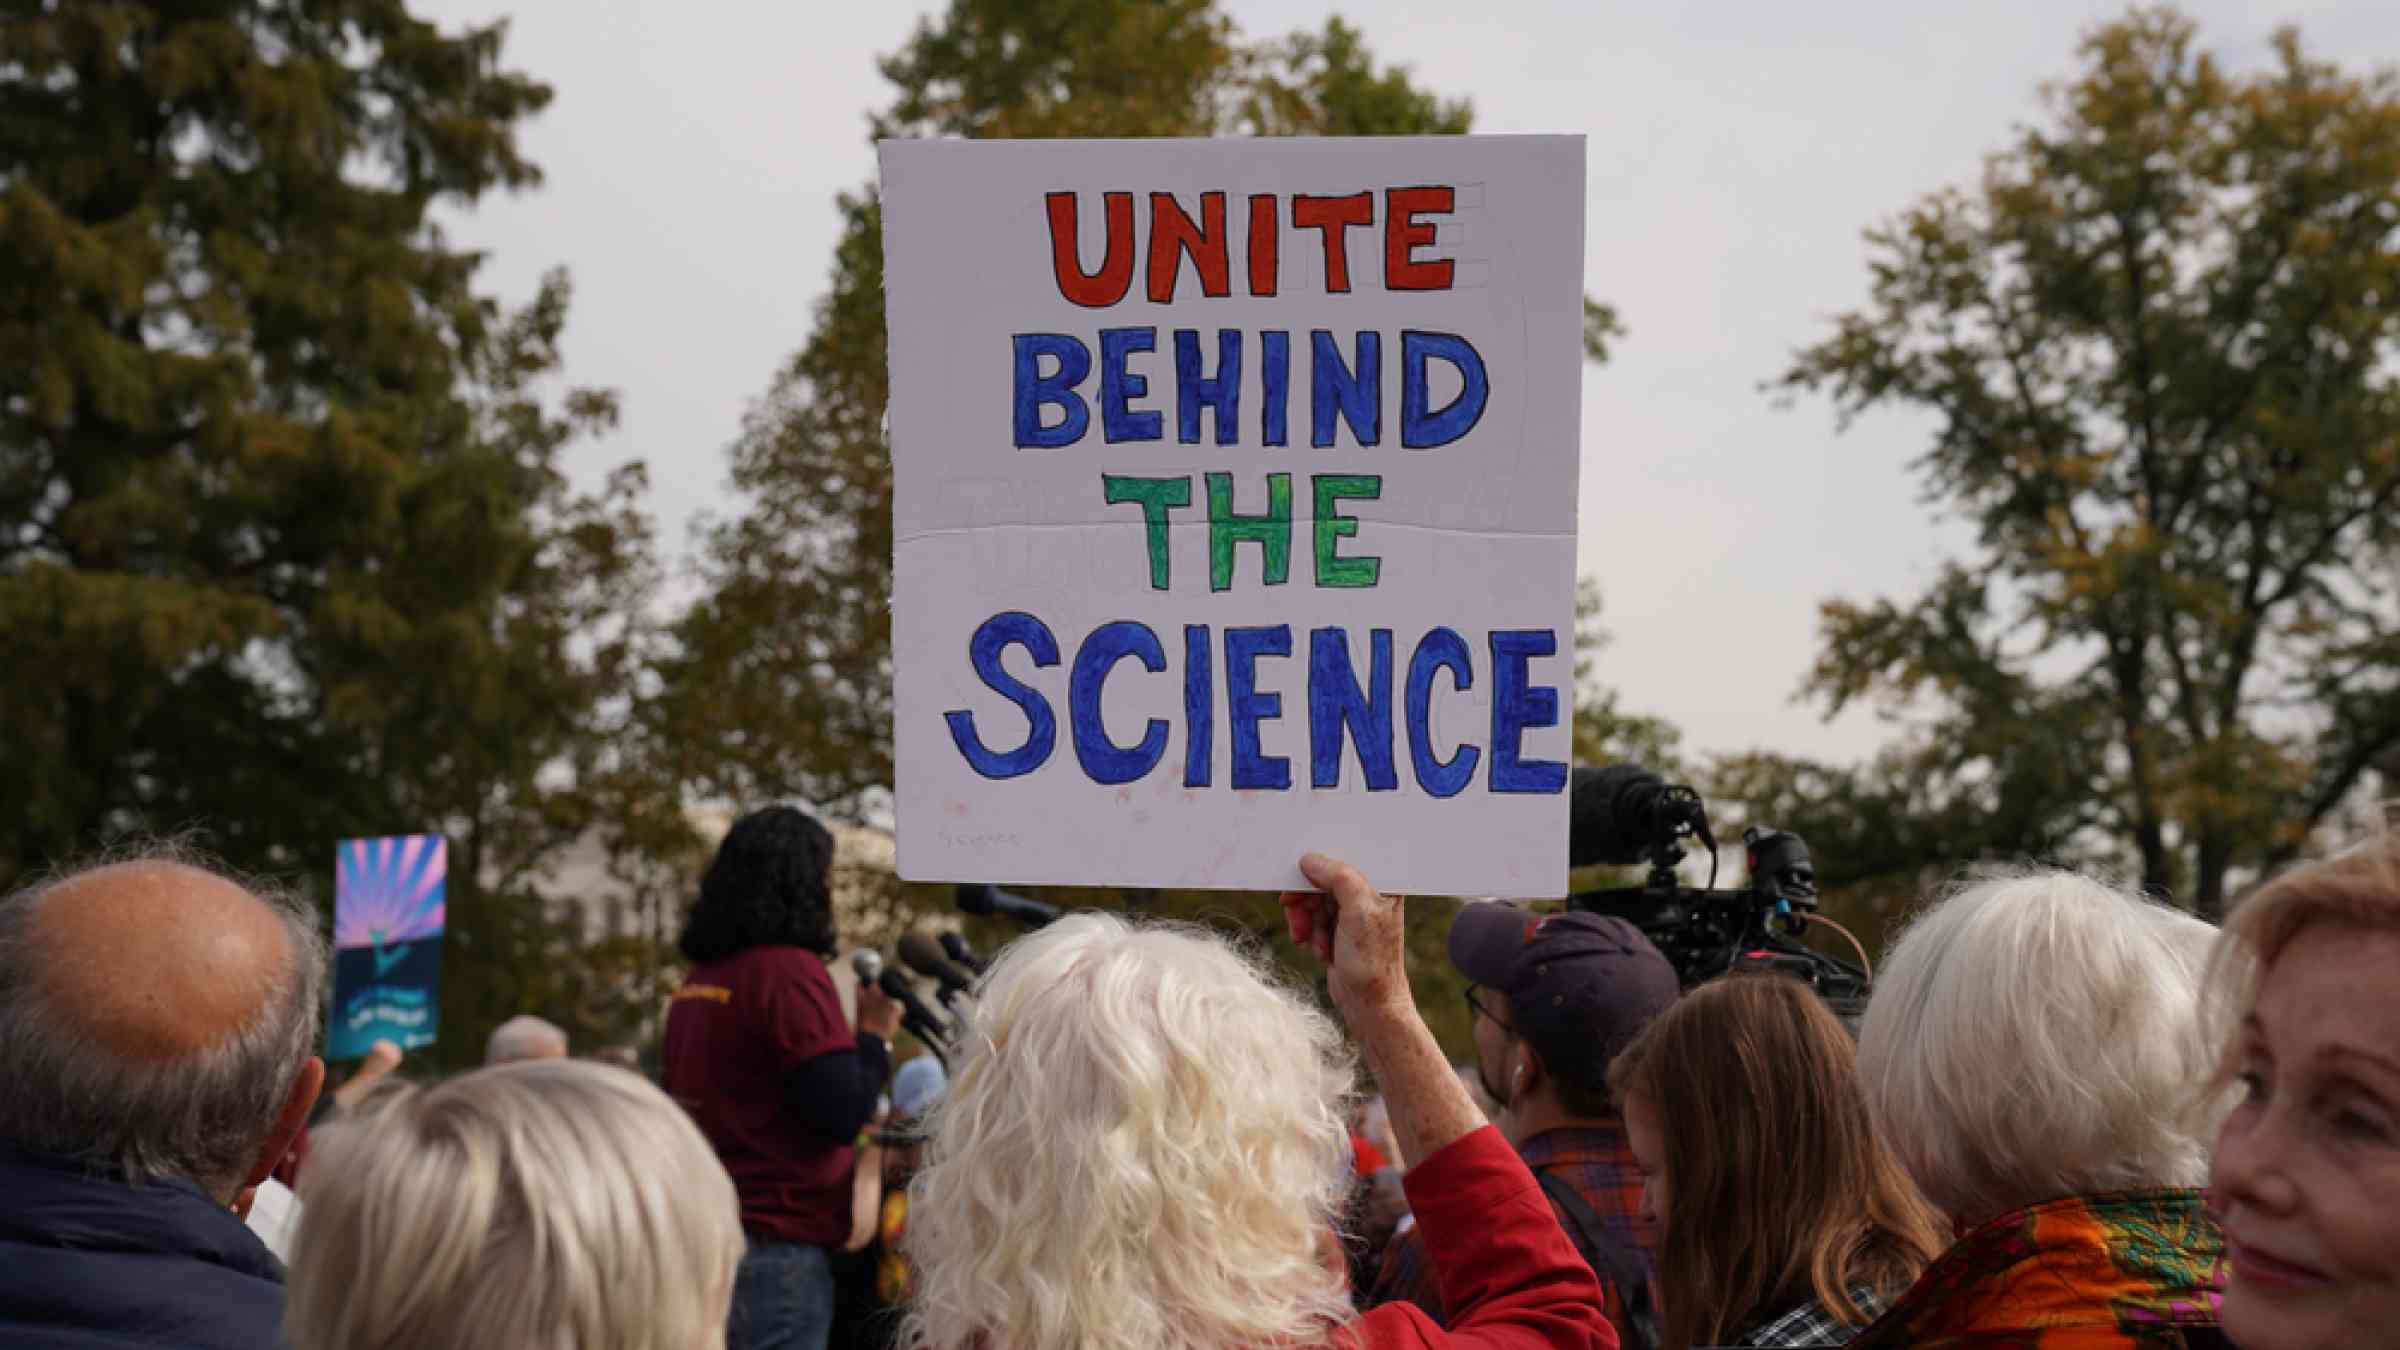 unite behind science